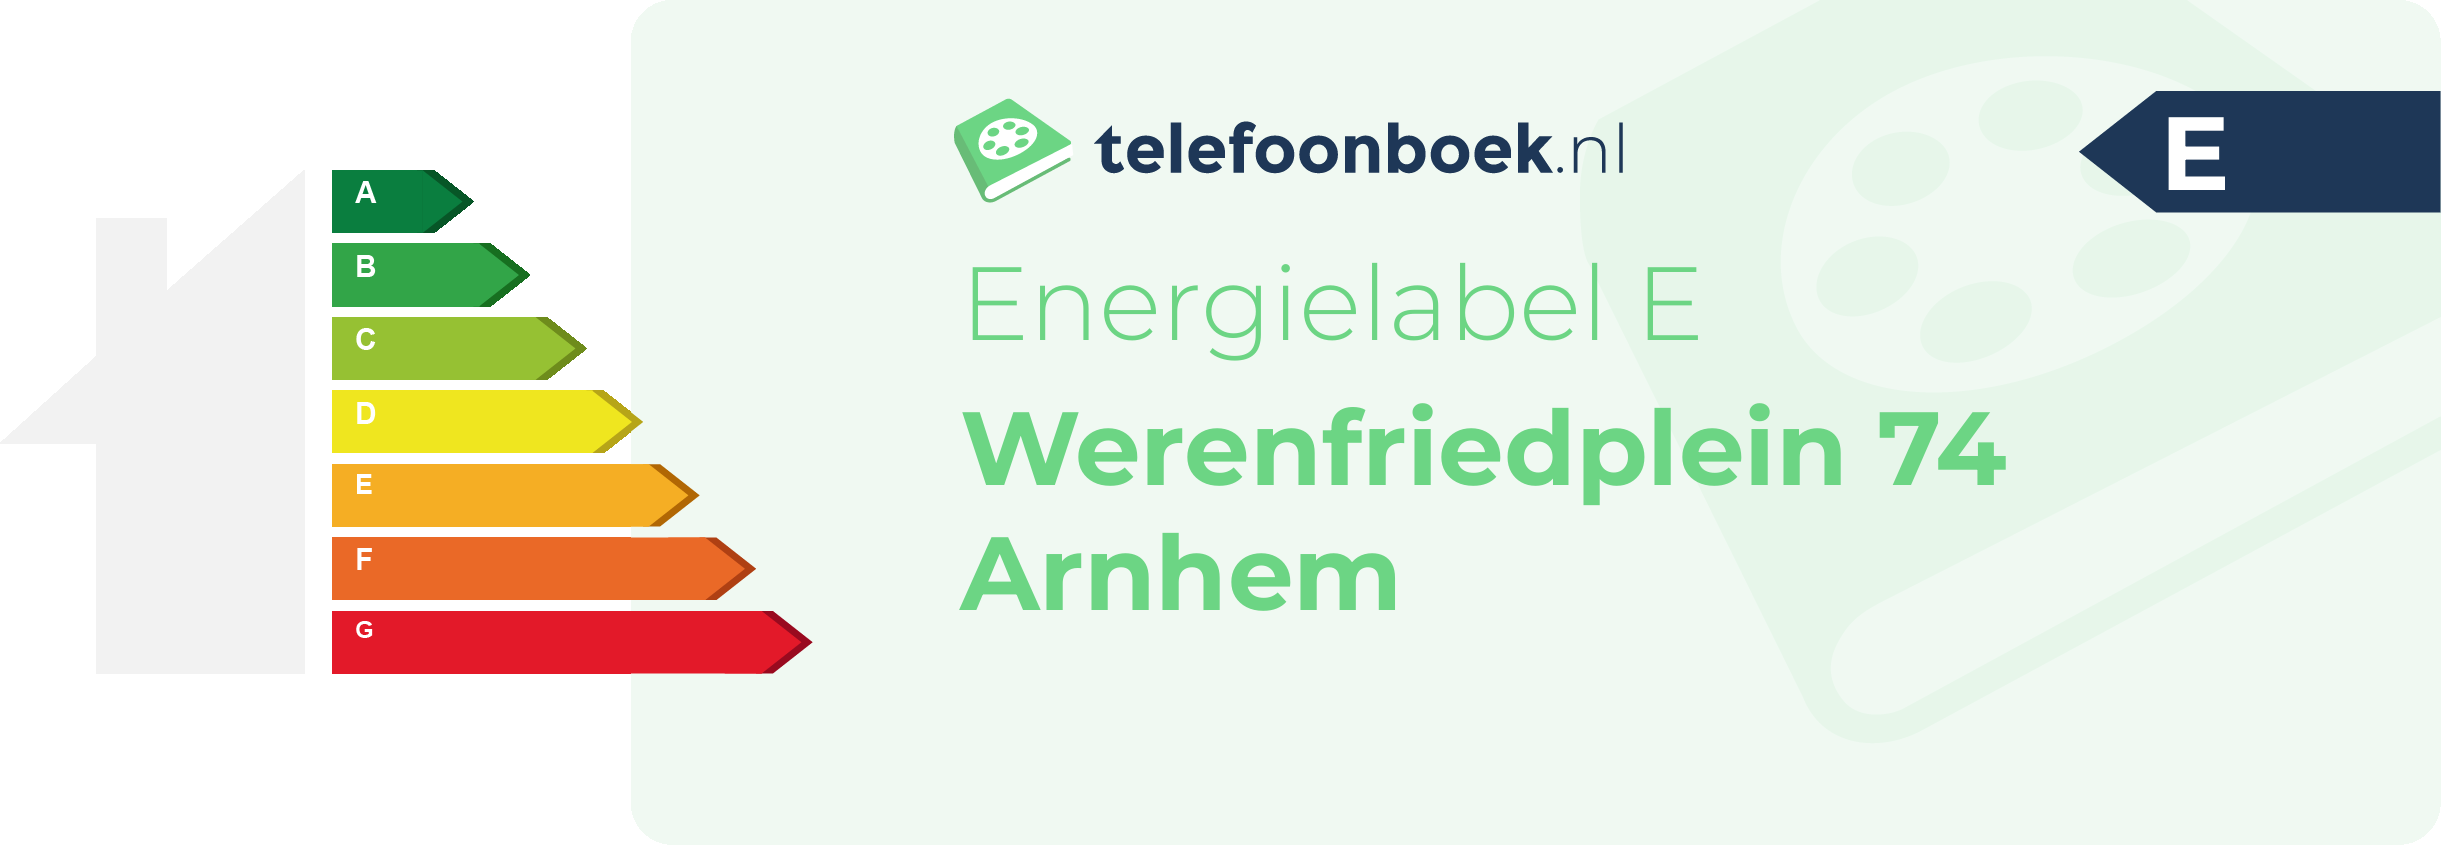 Energielabel Werenfriedplein 74 Arnhem